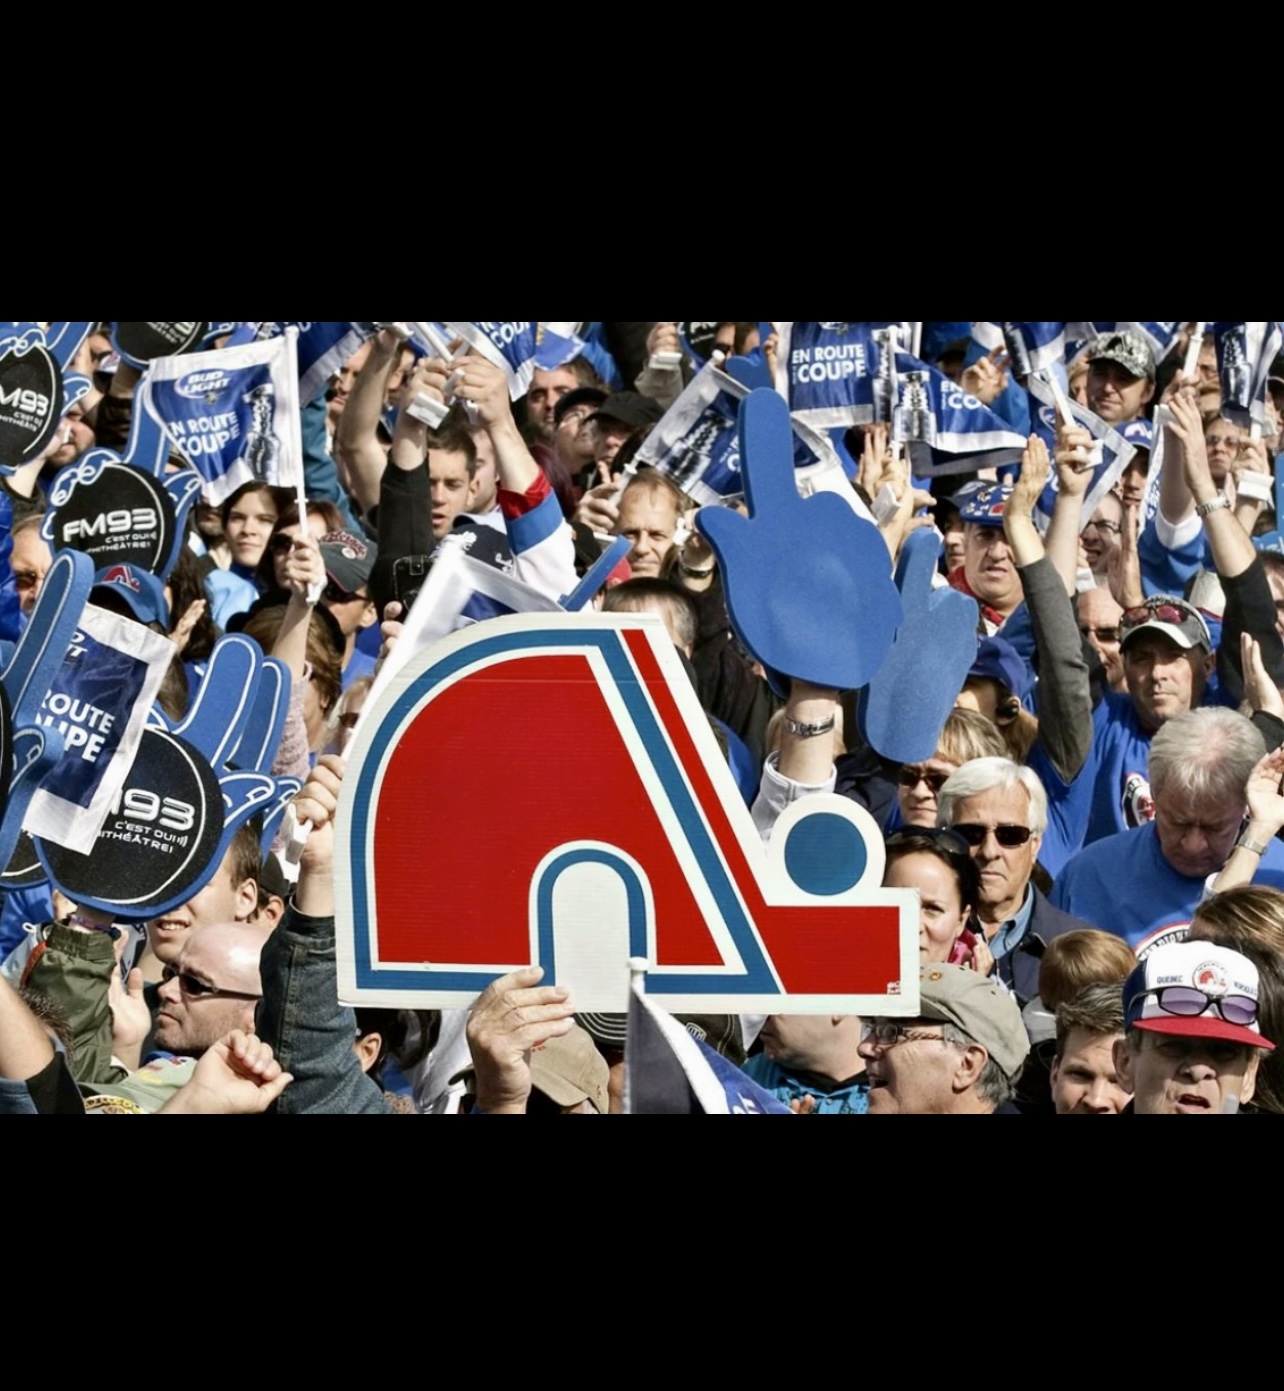 La presse sportive en folie capturant une foule de personnes brandissant une pancarte des Canadiens de Montréal.